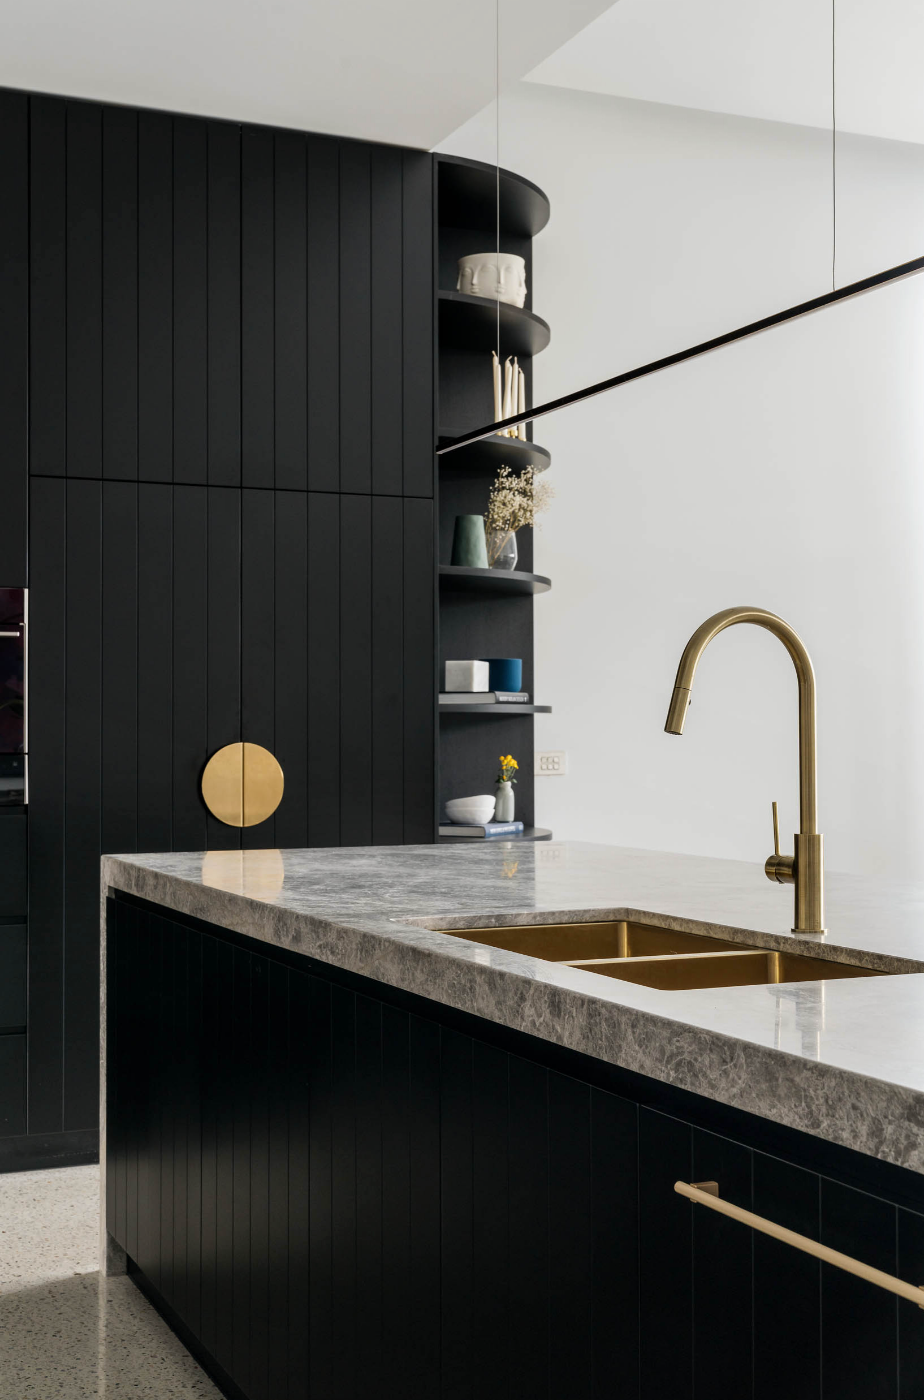 Brass tapware and sink in black kitchen